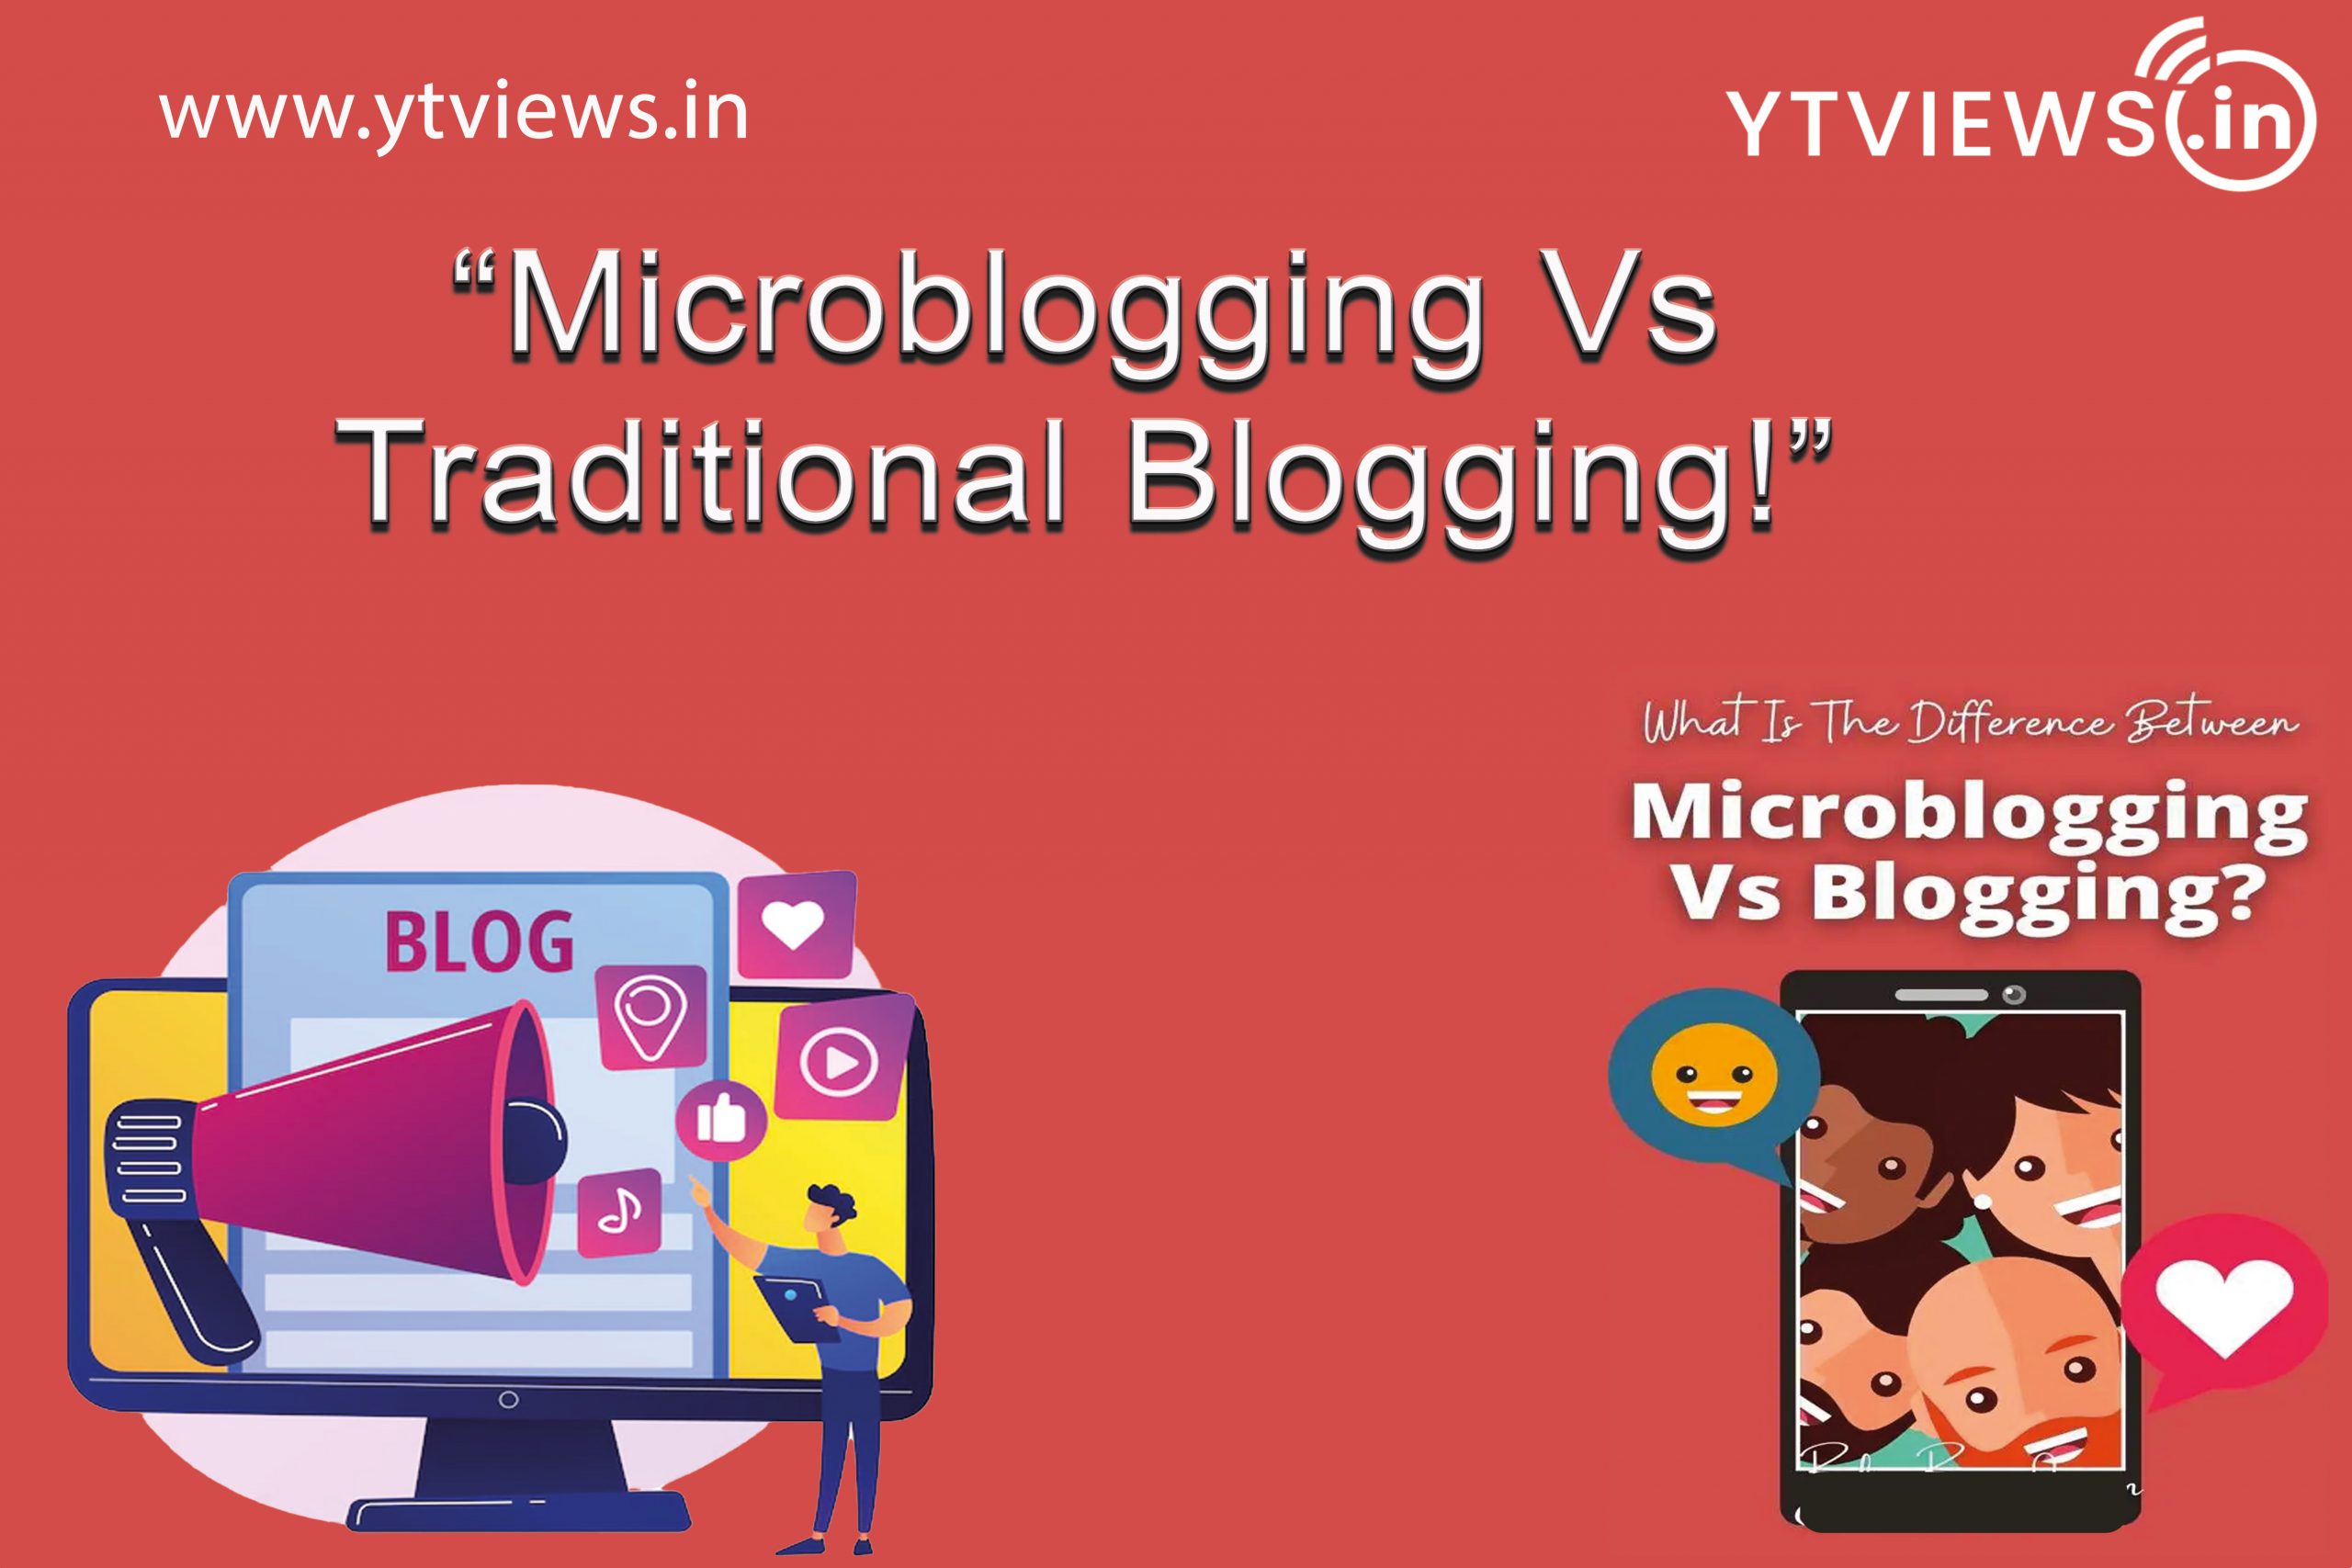 Microblogging VS Traditional Blogging